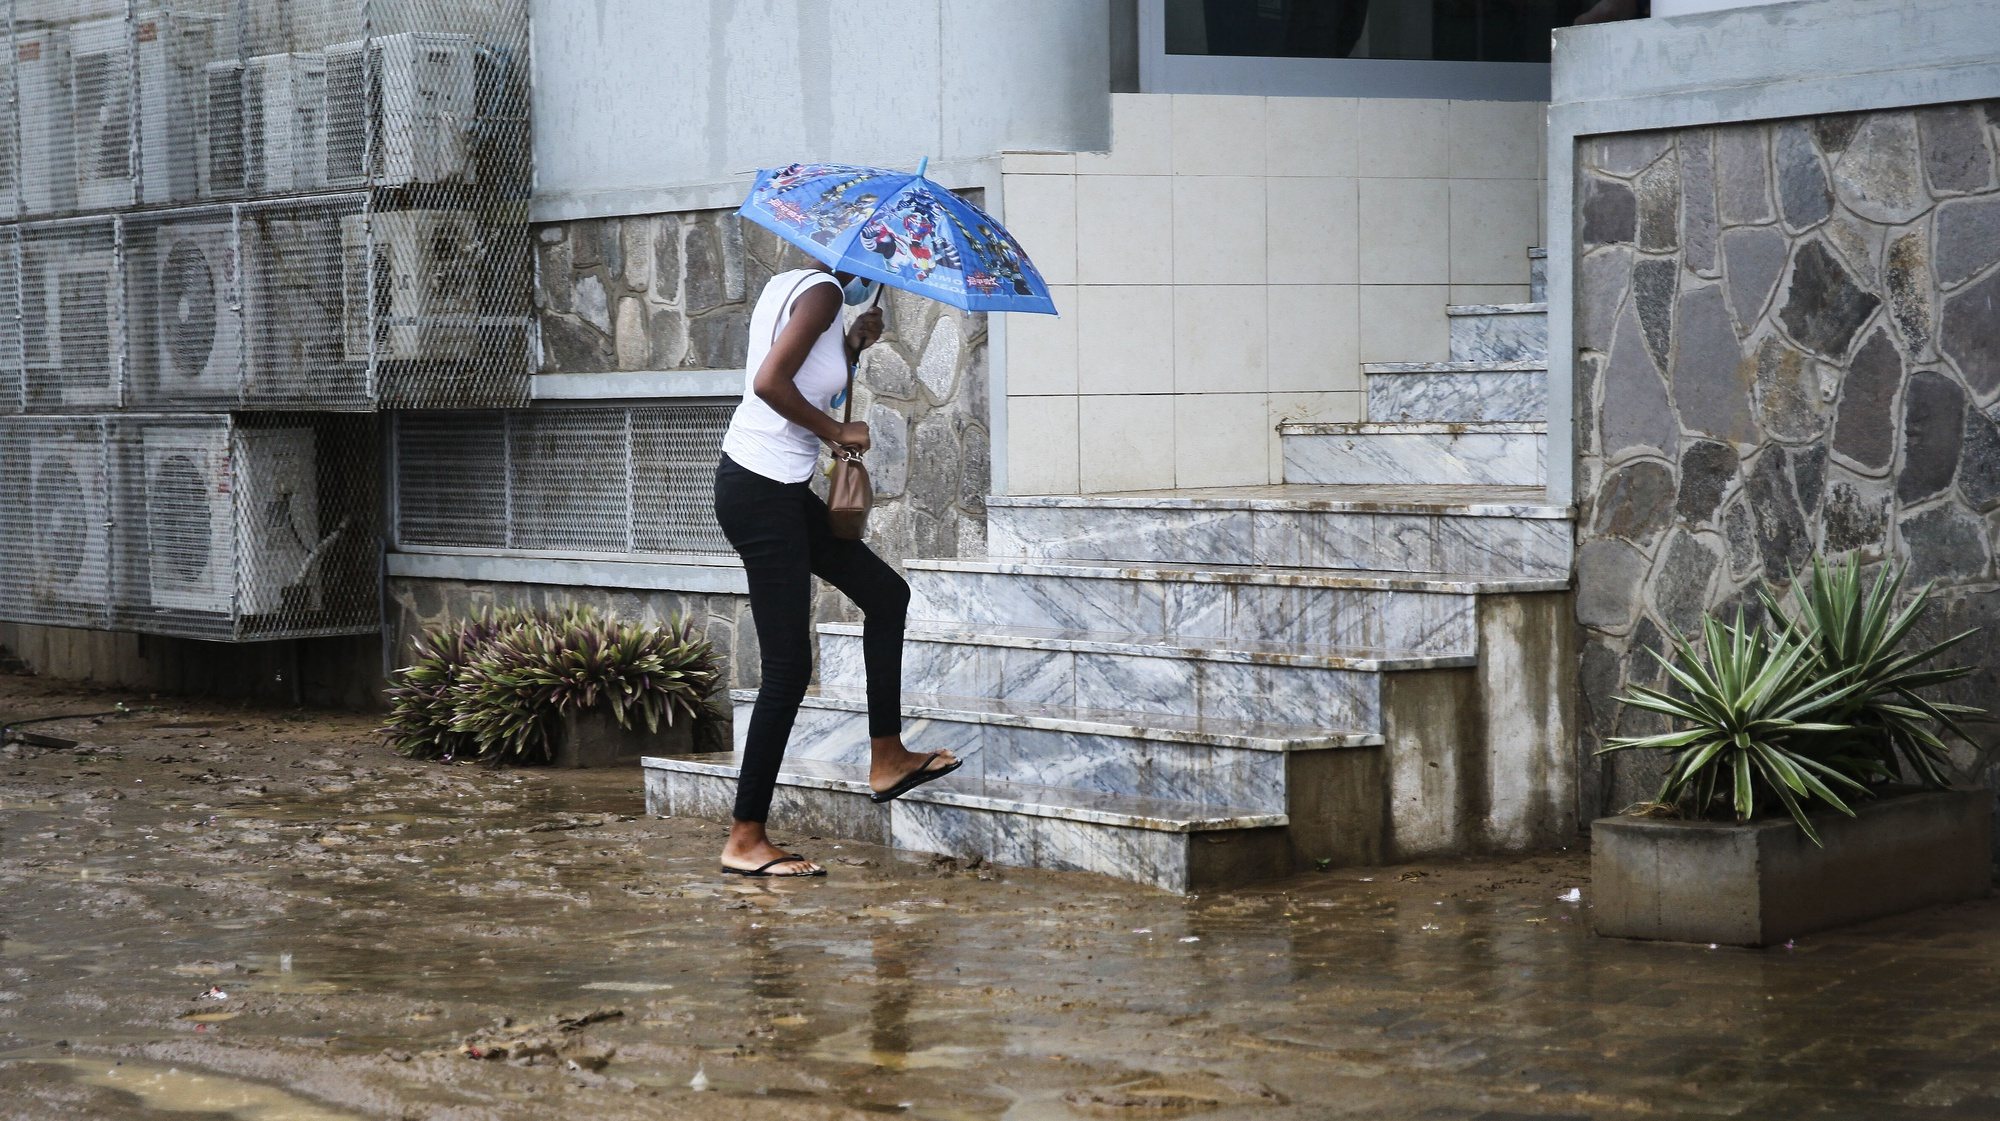 A chuva voltou a cair na cidade da Praia, no primeiro dia de campanha para as eleições autárquicas em Cabo Verde, com os praienses a pedirem civismo e respeito pelas normas para evitar a propagação da covid-19, Praia, Cabo Verde, 08 de outubro de 2020. Quase um mês depois, a cidade da Praia voltou a registar chuva, que começou com alguma intensidade por volta das 11:00 locais (13:00 em Lisboa), depois de o dia amanhecer quente e com o sol abrasador na capital de Cabo Verde. FERNANDO DE PINA/LUSA